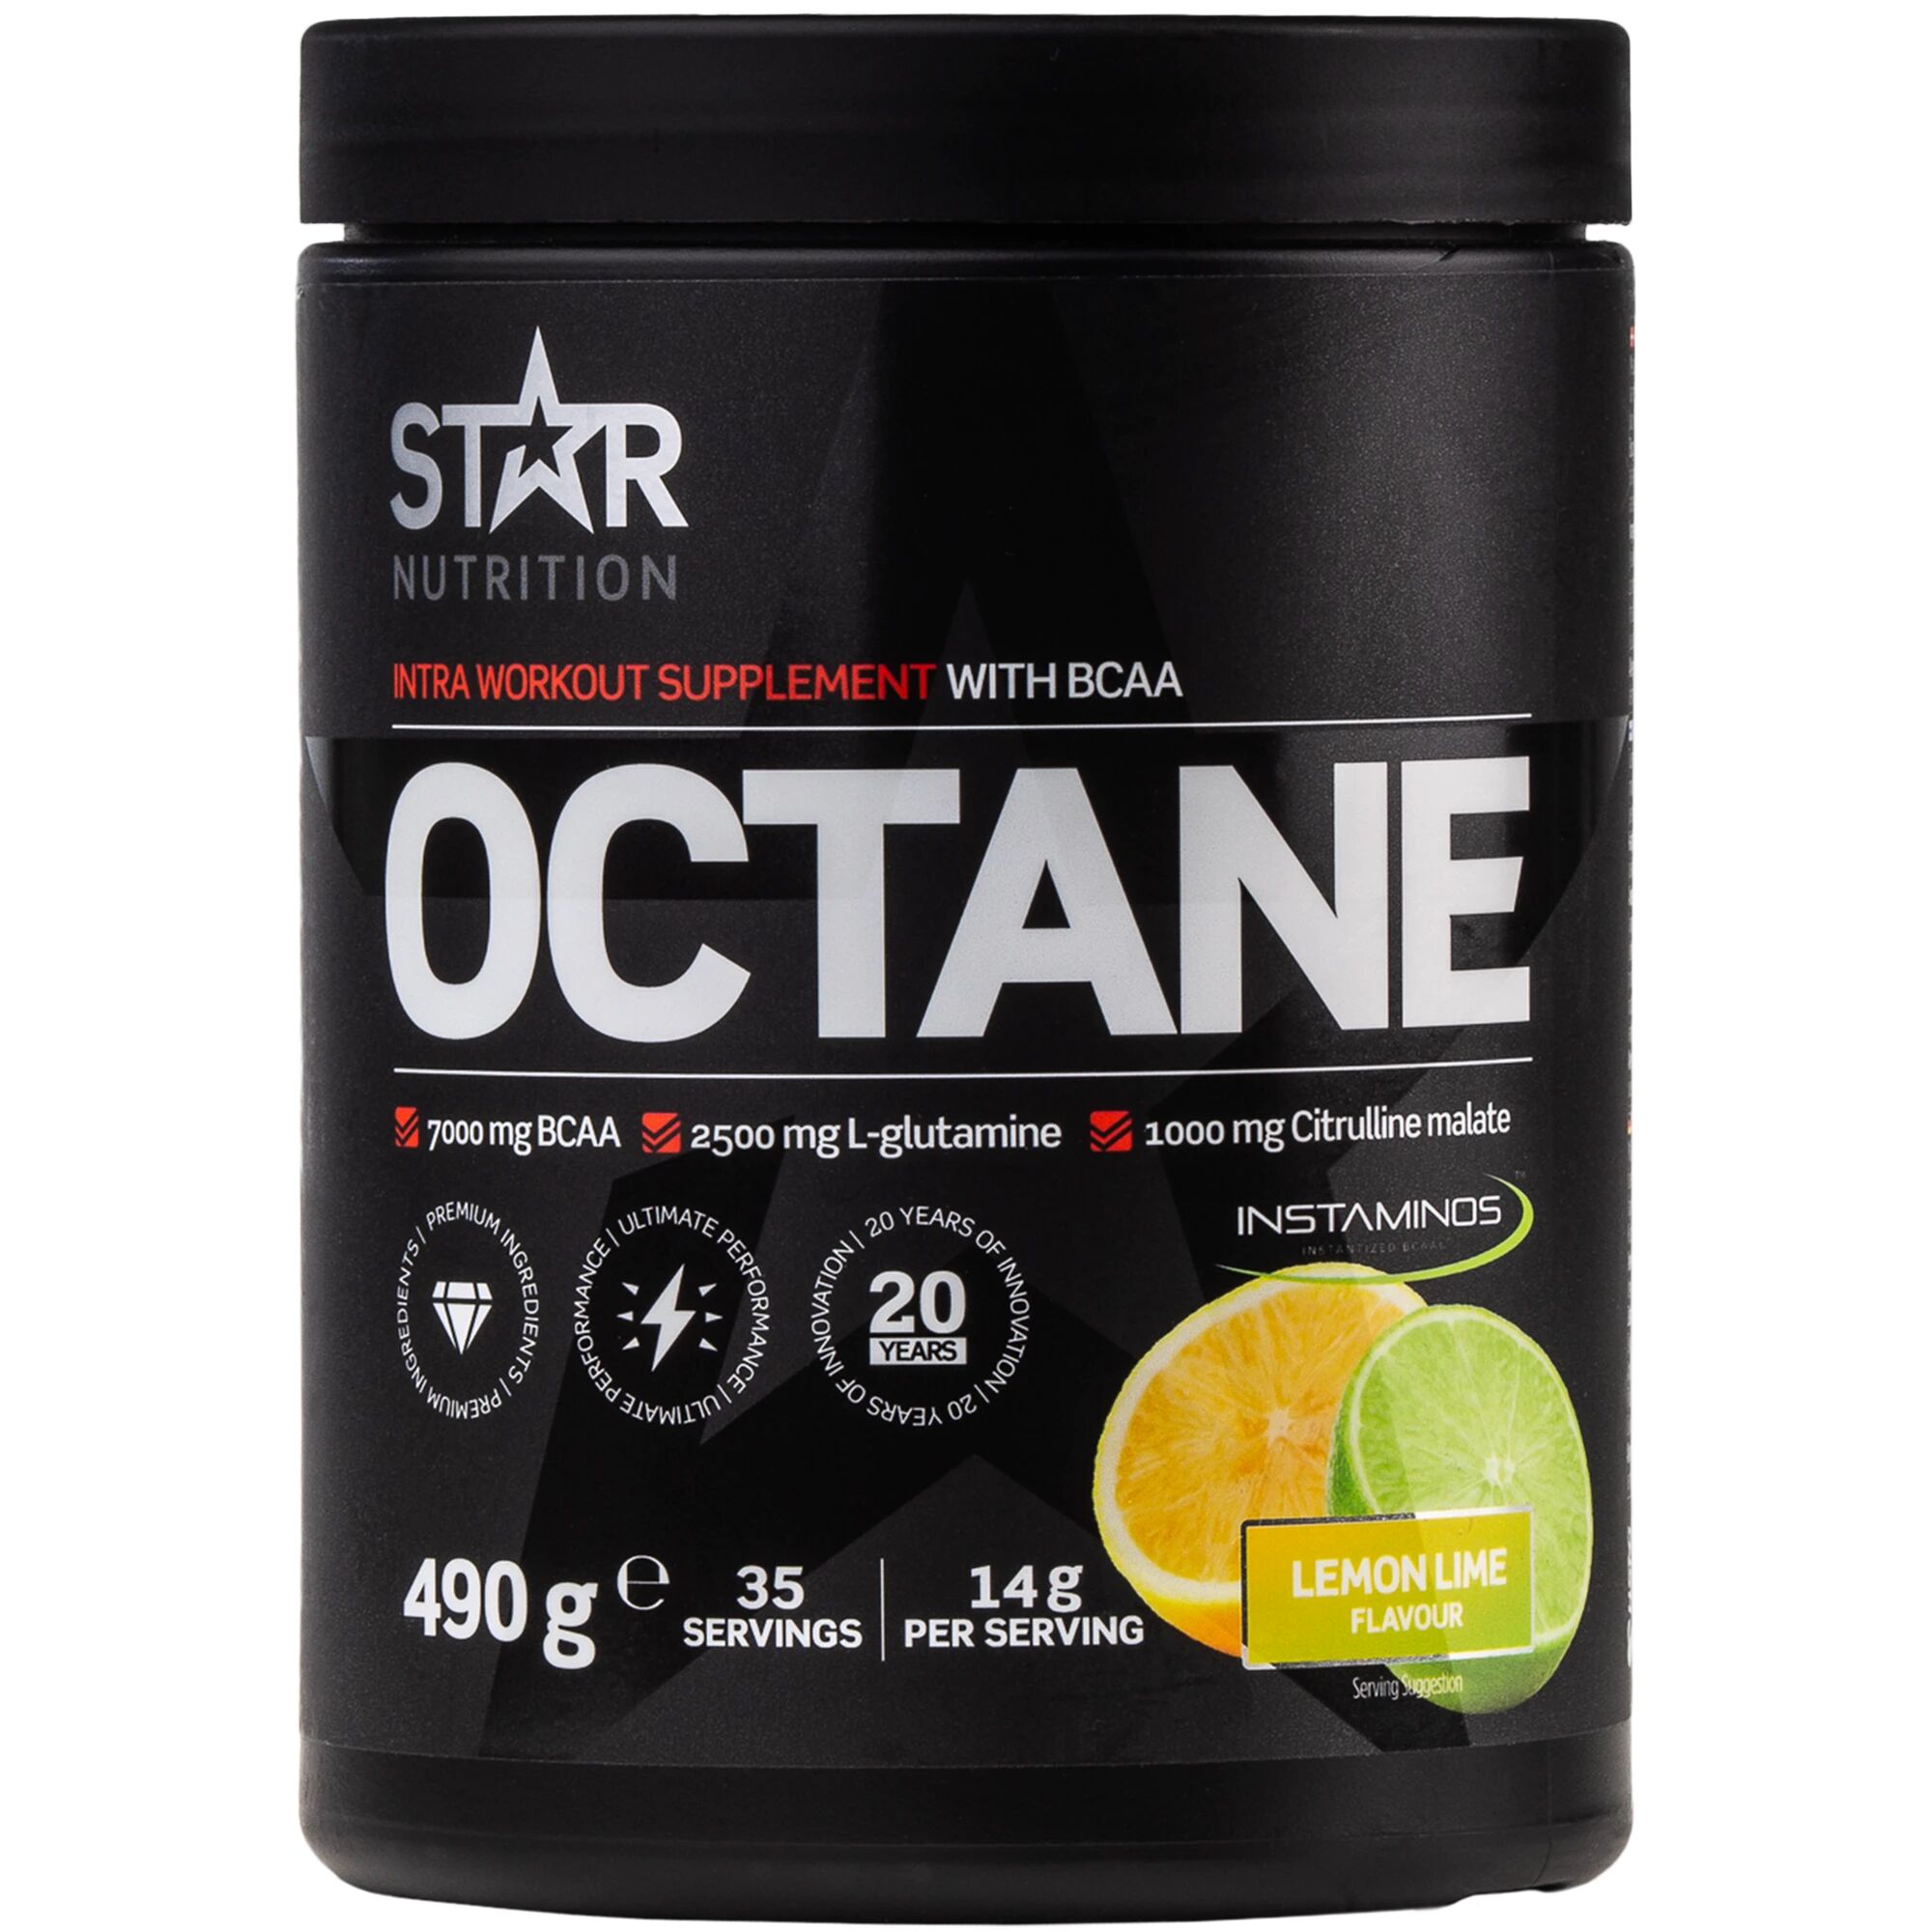 Star Nutrition Octane 490 g 490g Lemonlimesour